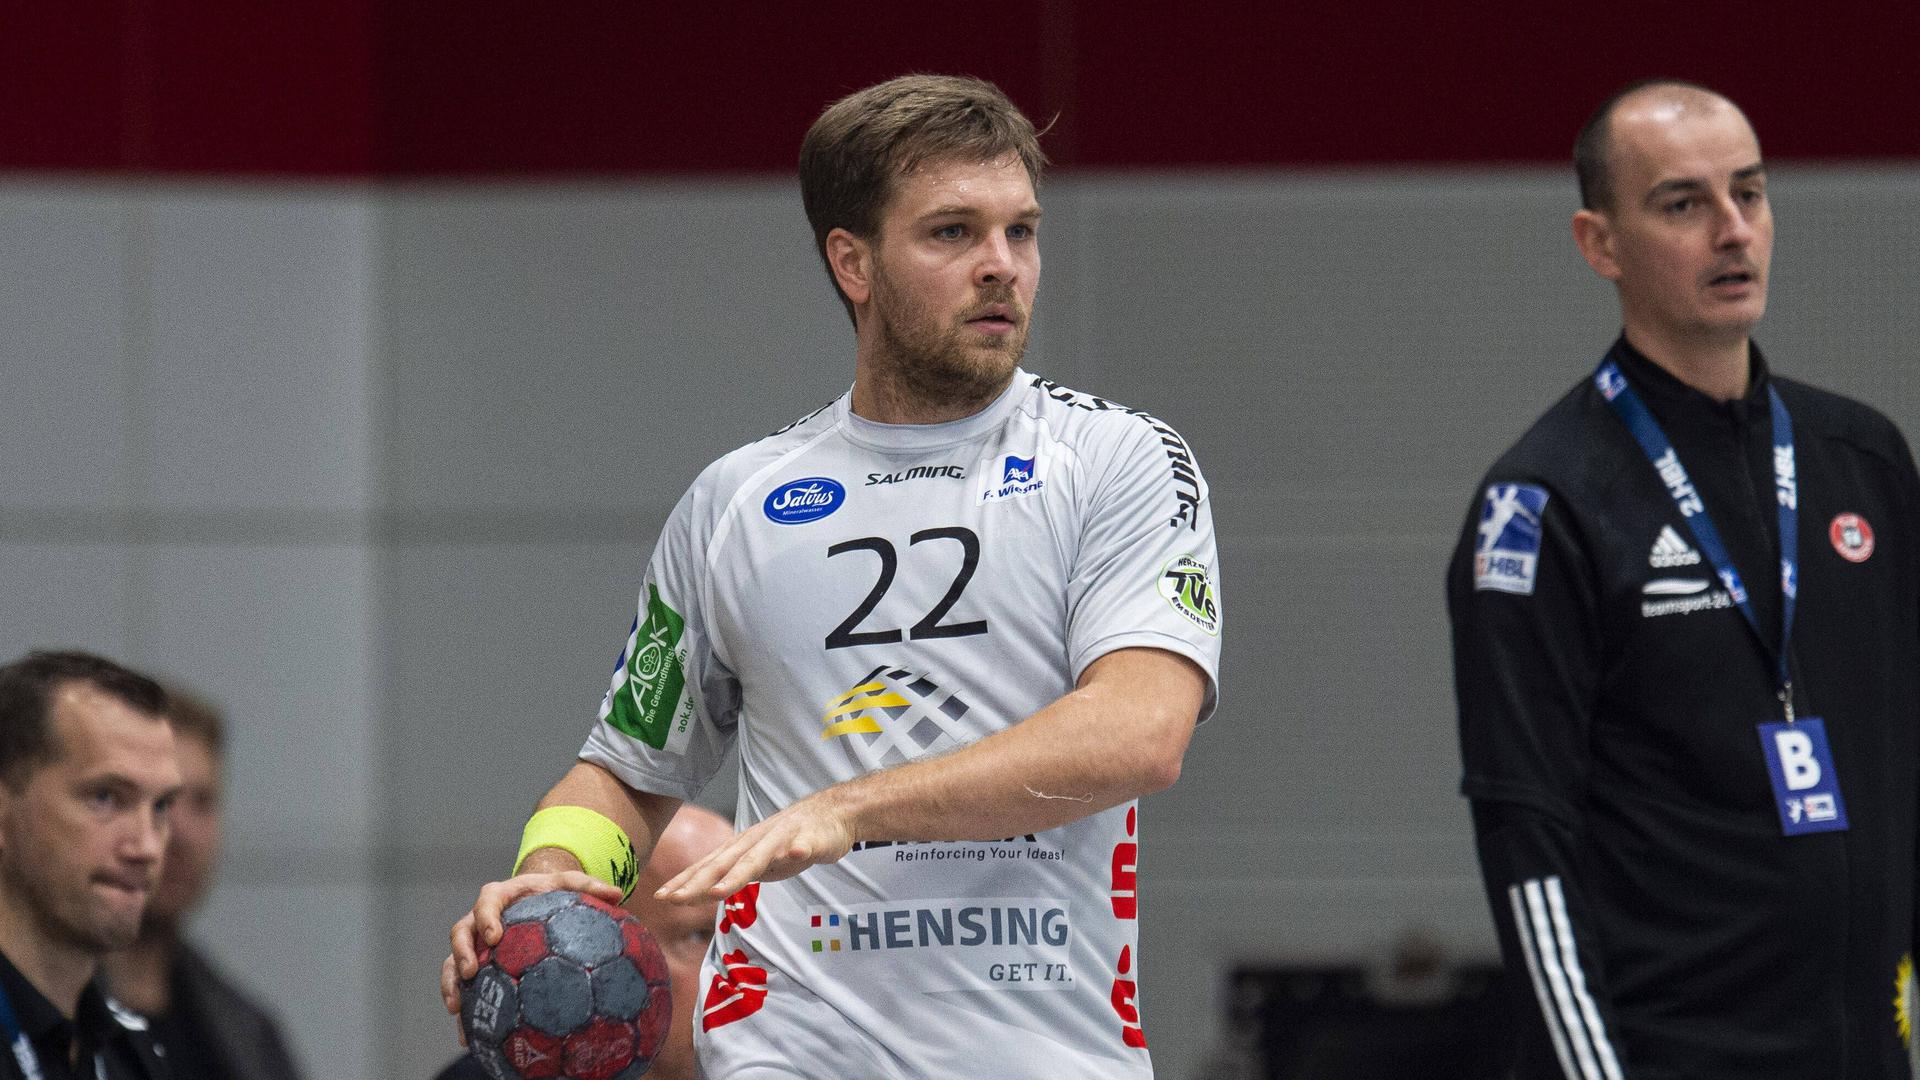 Klassenverbleib perfekt: Dirk Holzner, der aus den Reihen des BSV Phönix Sinzheim hervorgegangen ist, bleibt mit dem TV Emsdetten in der Zweiten Handball-Bundesliga.